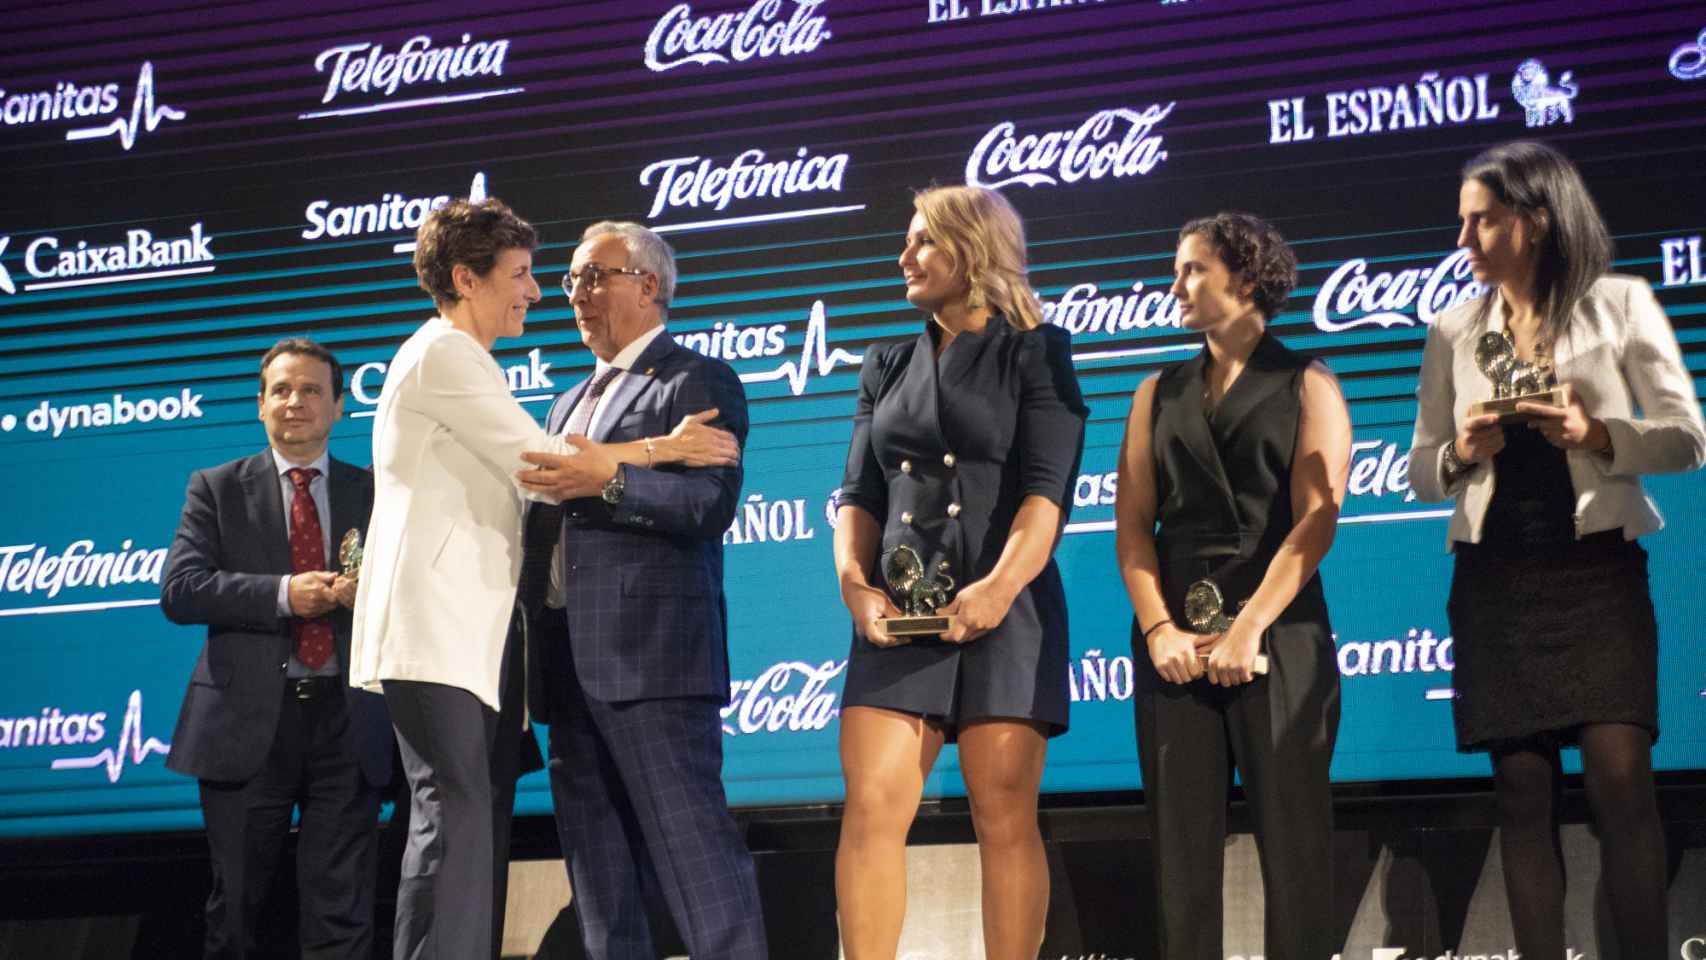 Elisa Aguilar, medallista de la Selección Española de Baloncesto, recoge el galardón de Los Leones de El Español